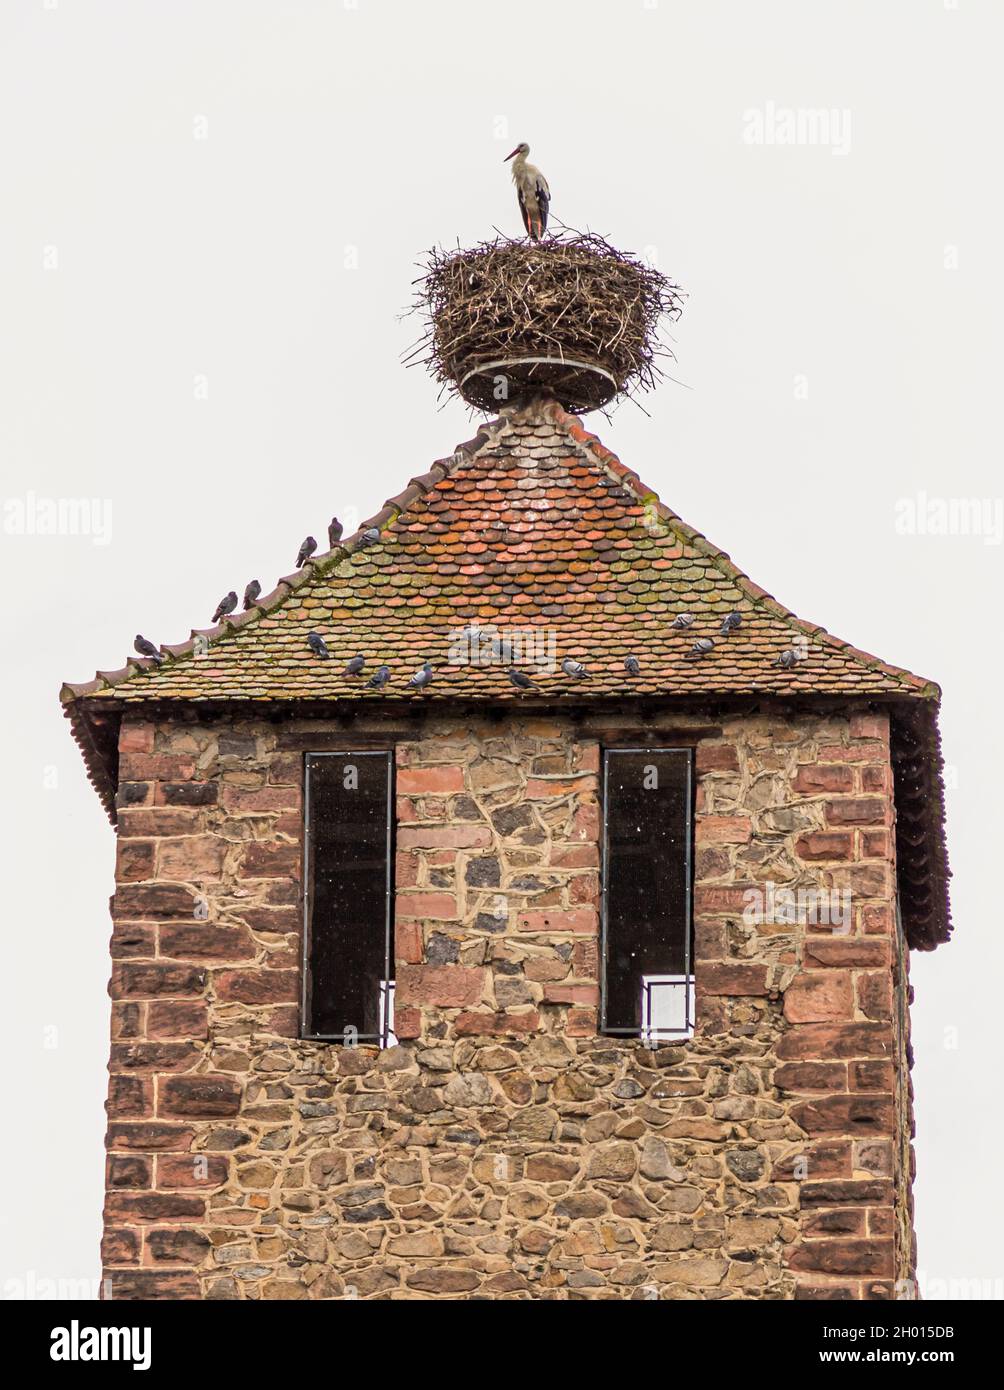 Stork and doves on the Kessler Tower in Kaysersberg, France Stock Photo